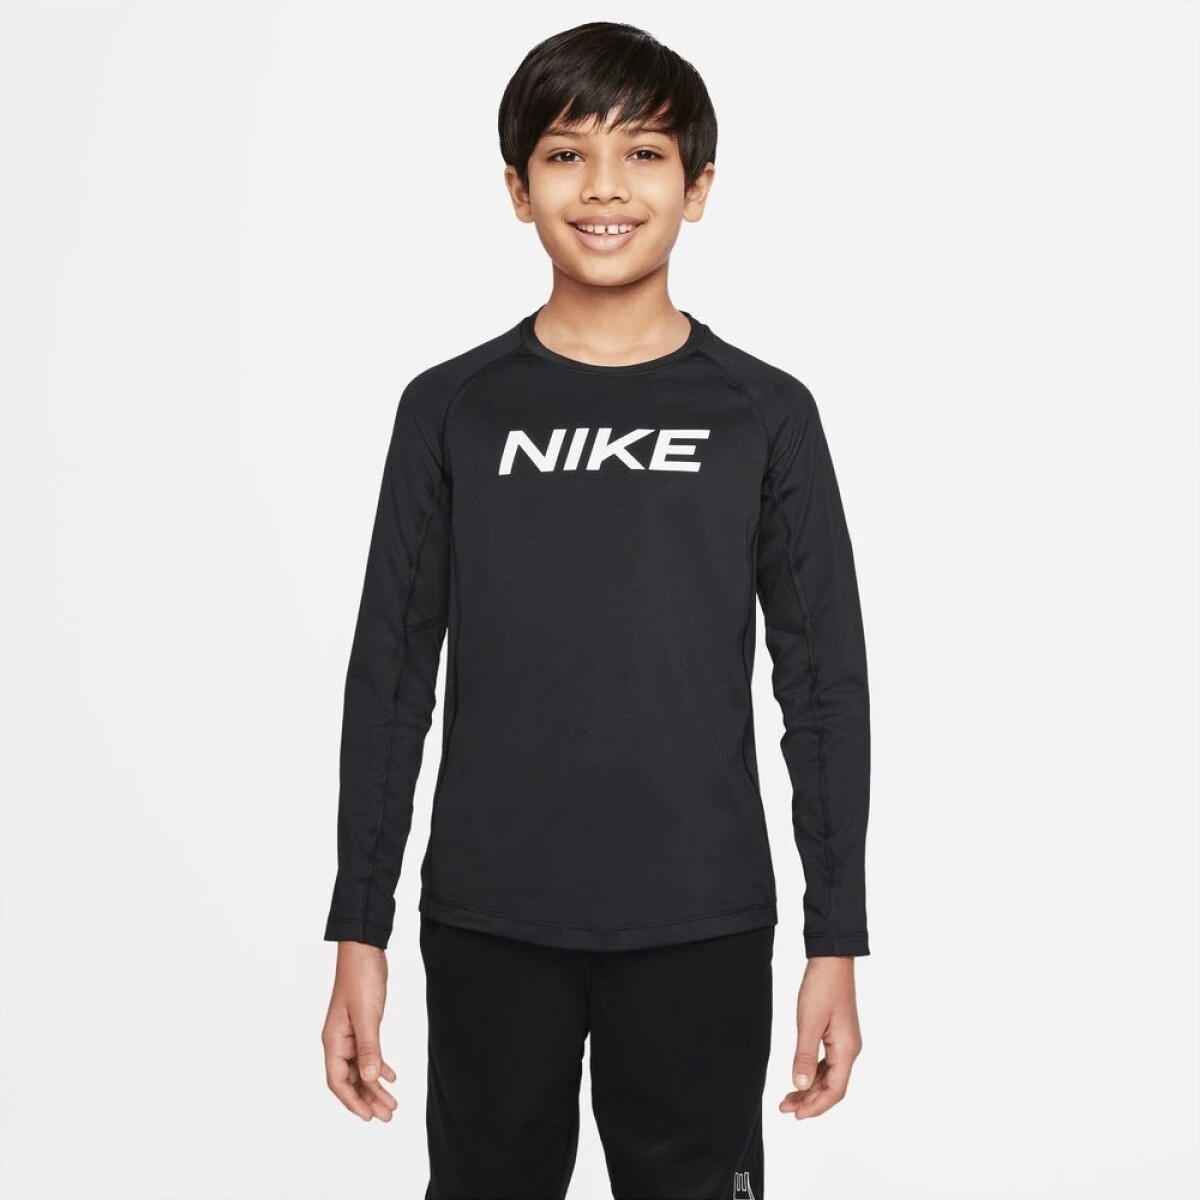 Remera Nike Niño Np Df Ls Top Black - Color Único 